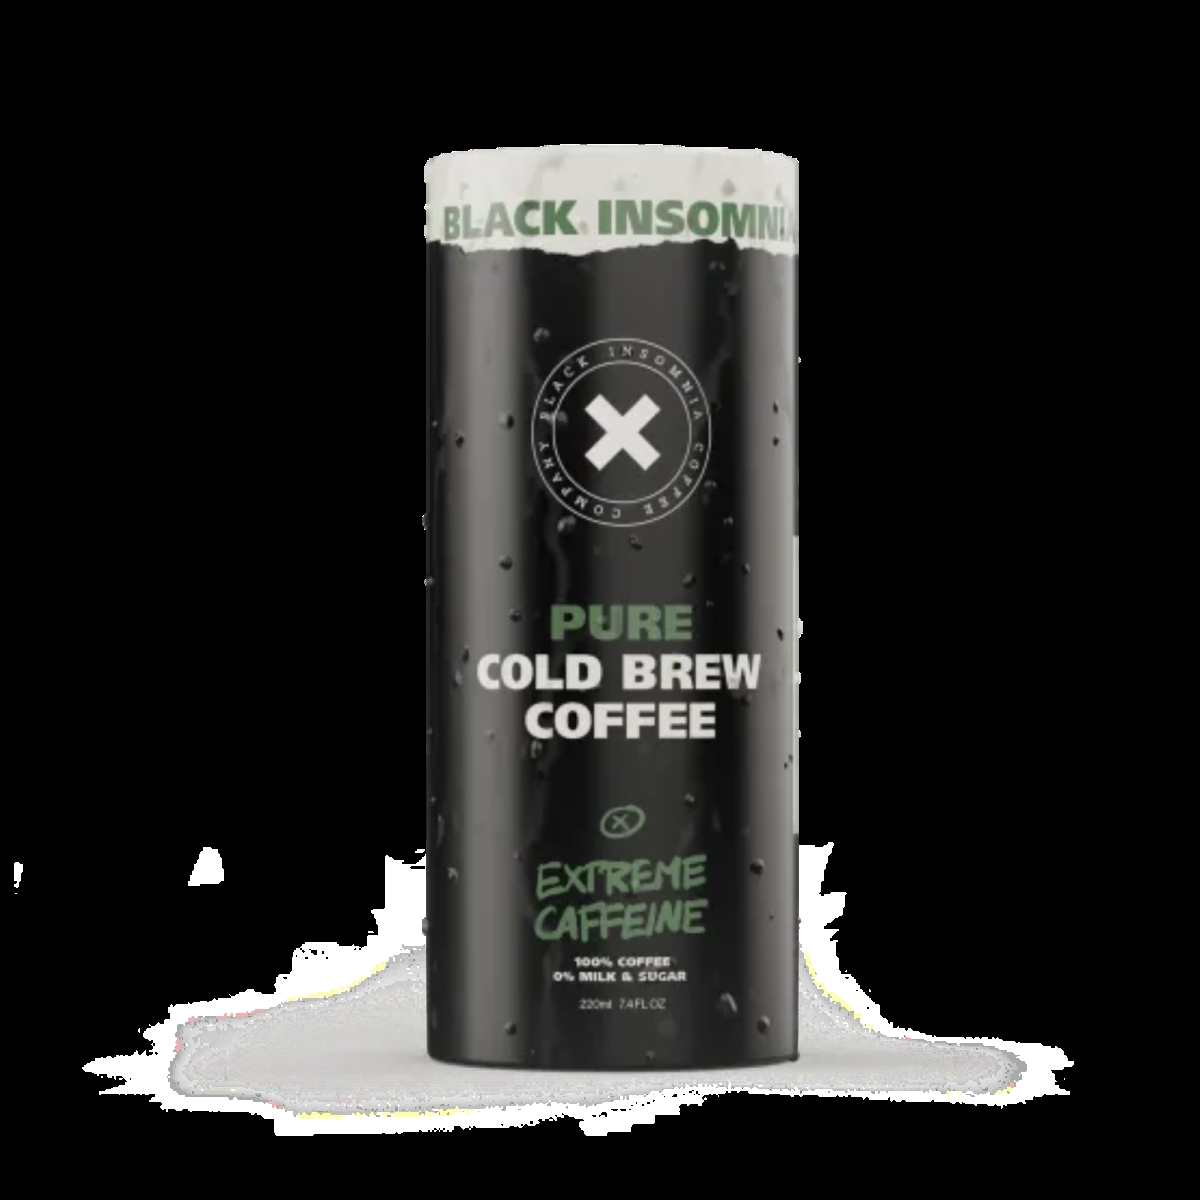 Picture of Black Insomnia BICCOldBrew-Pure-1Can 7.4 fl oz Extreme Caffeine Pure Cold Brew Coffee